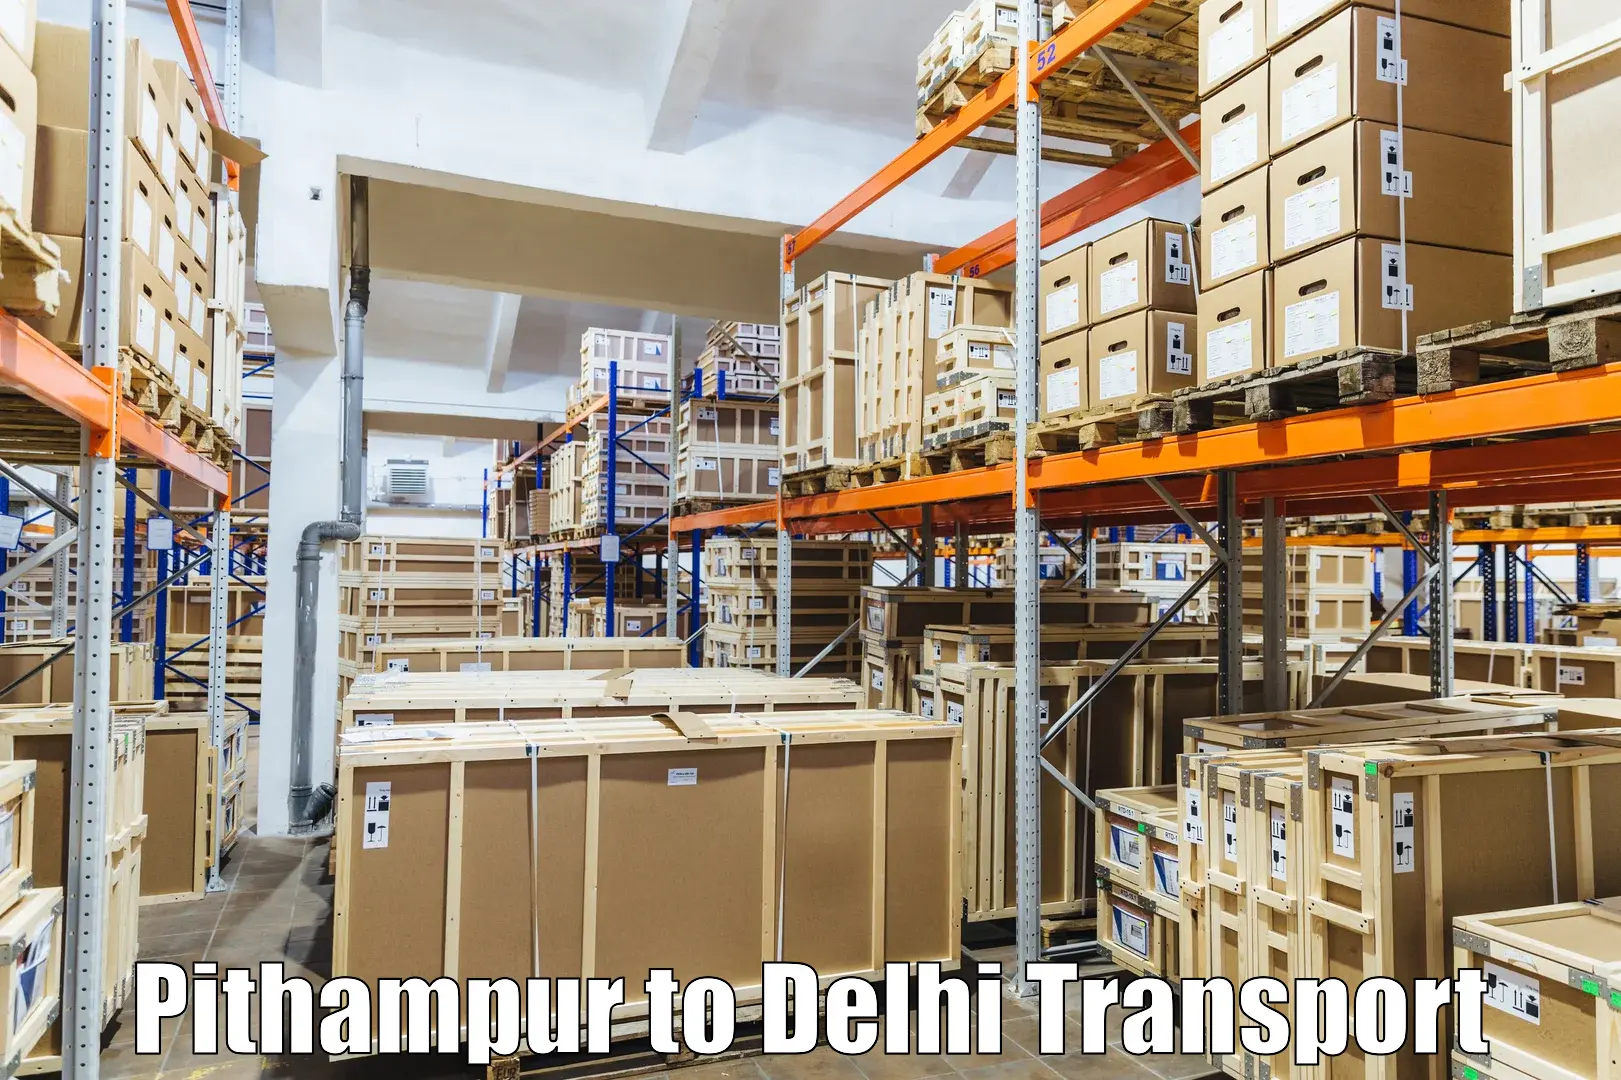 Road transport online services Pithampur to Jamia Millia Islamia New Delhi